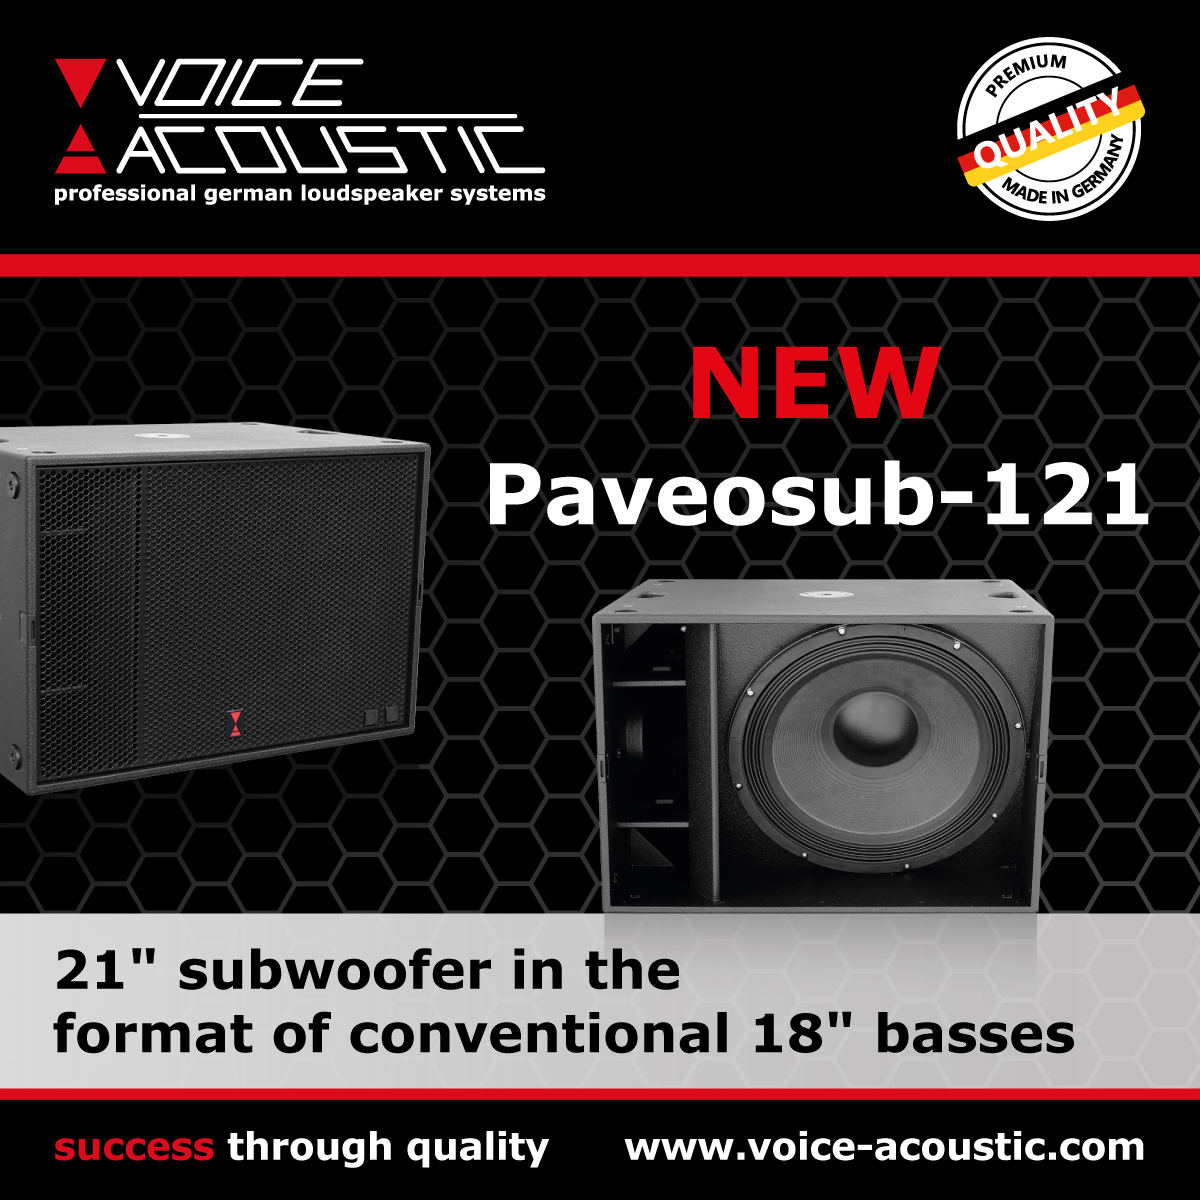 New: Voice-Acoustic Paveosub-121